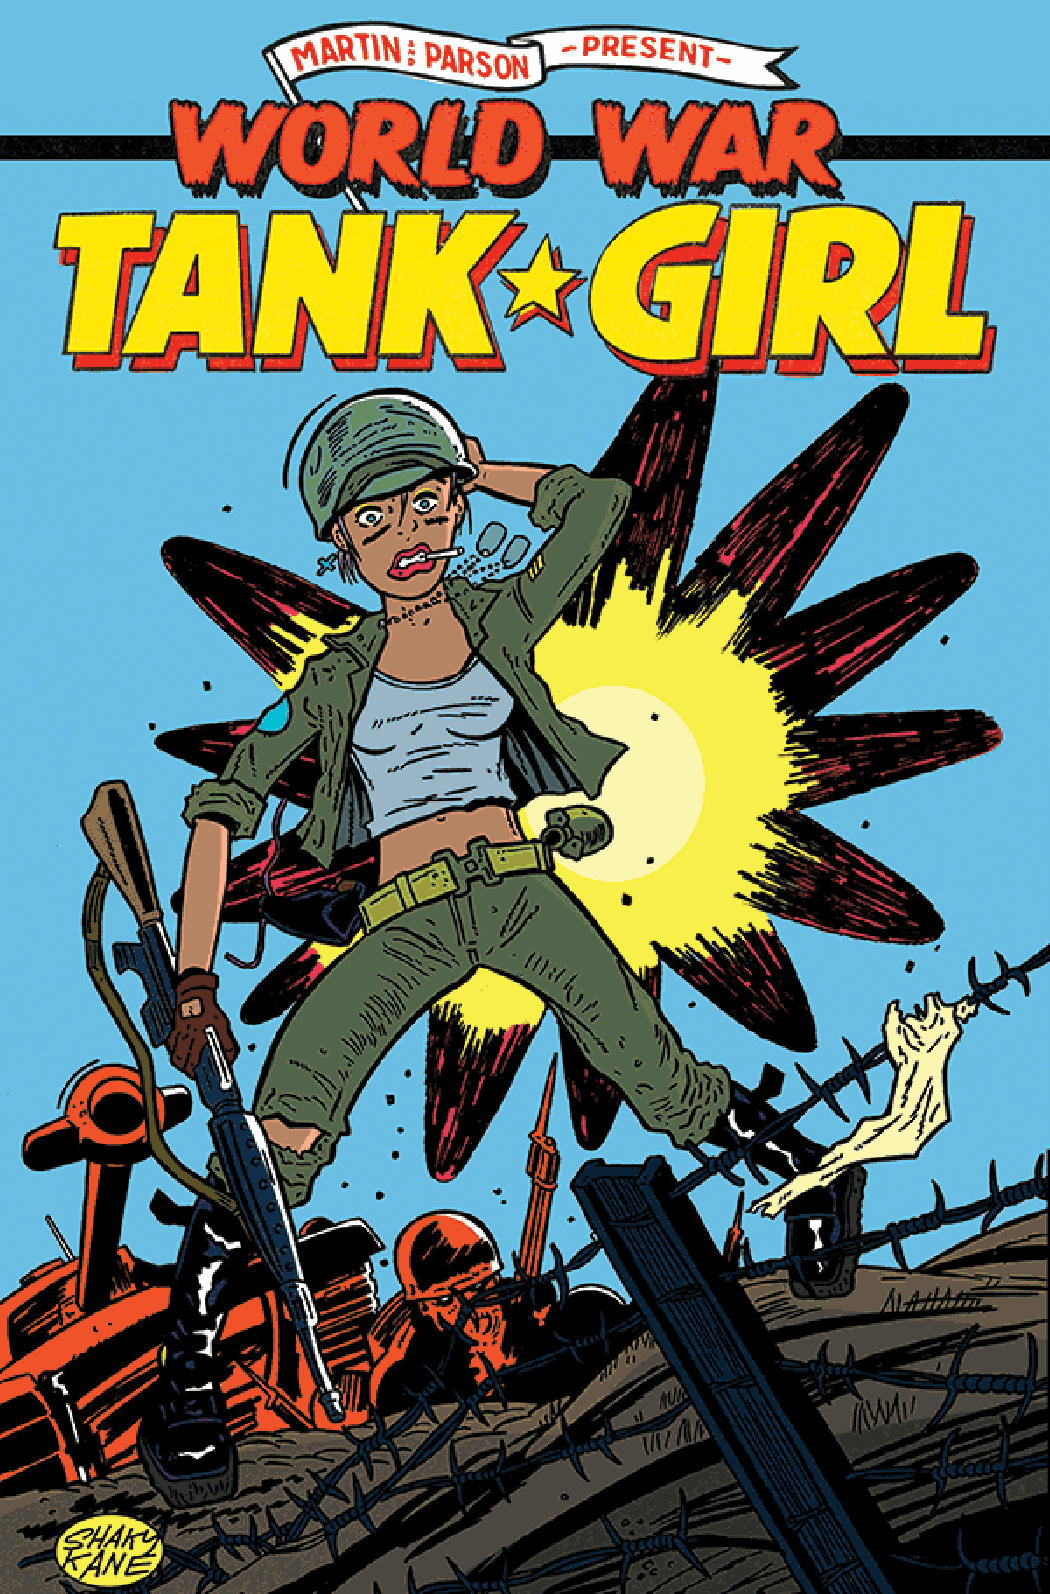 TANK GIRL WORLD WAR TANK GIRL #1 (OF 4) CVR C KANE